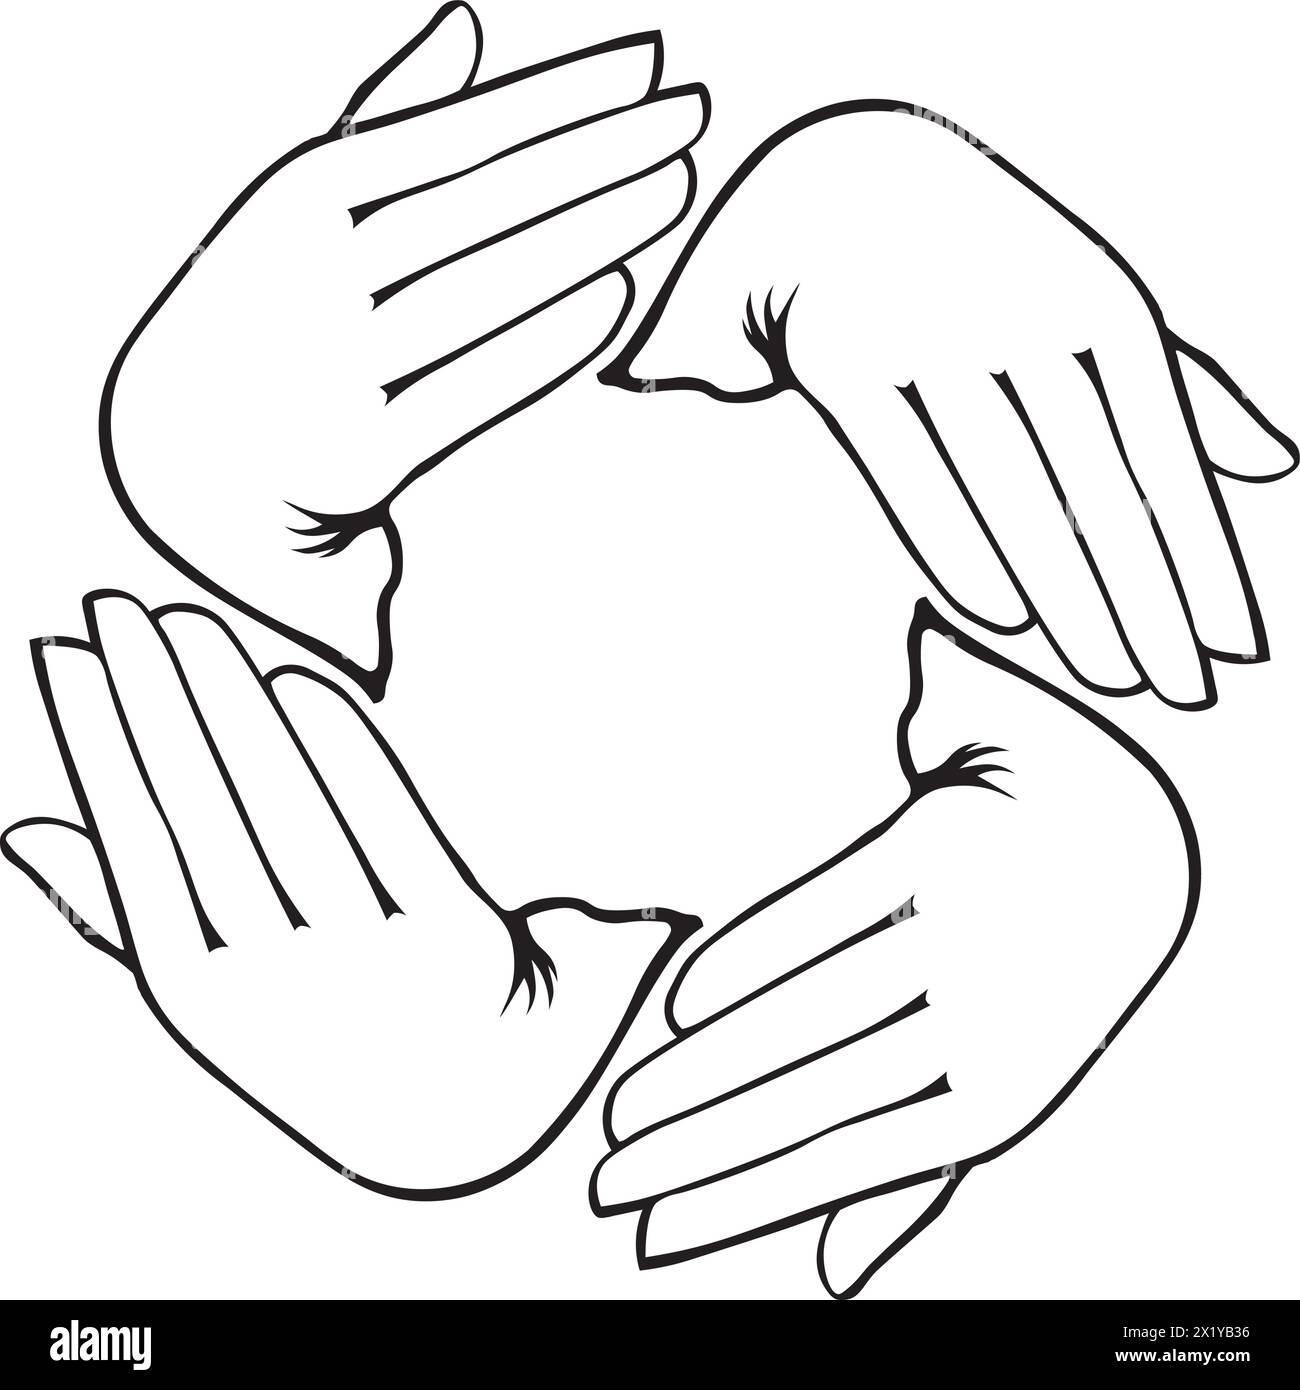 Kreisförmig angeordnete Hände deuten auf Bewegung und Interaktion innerhalb einer Gemeinschaft oder zwischen Einzelpersonen hin Stock Vektor